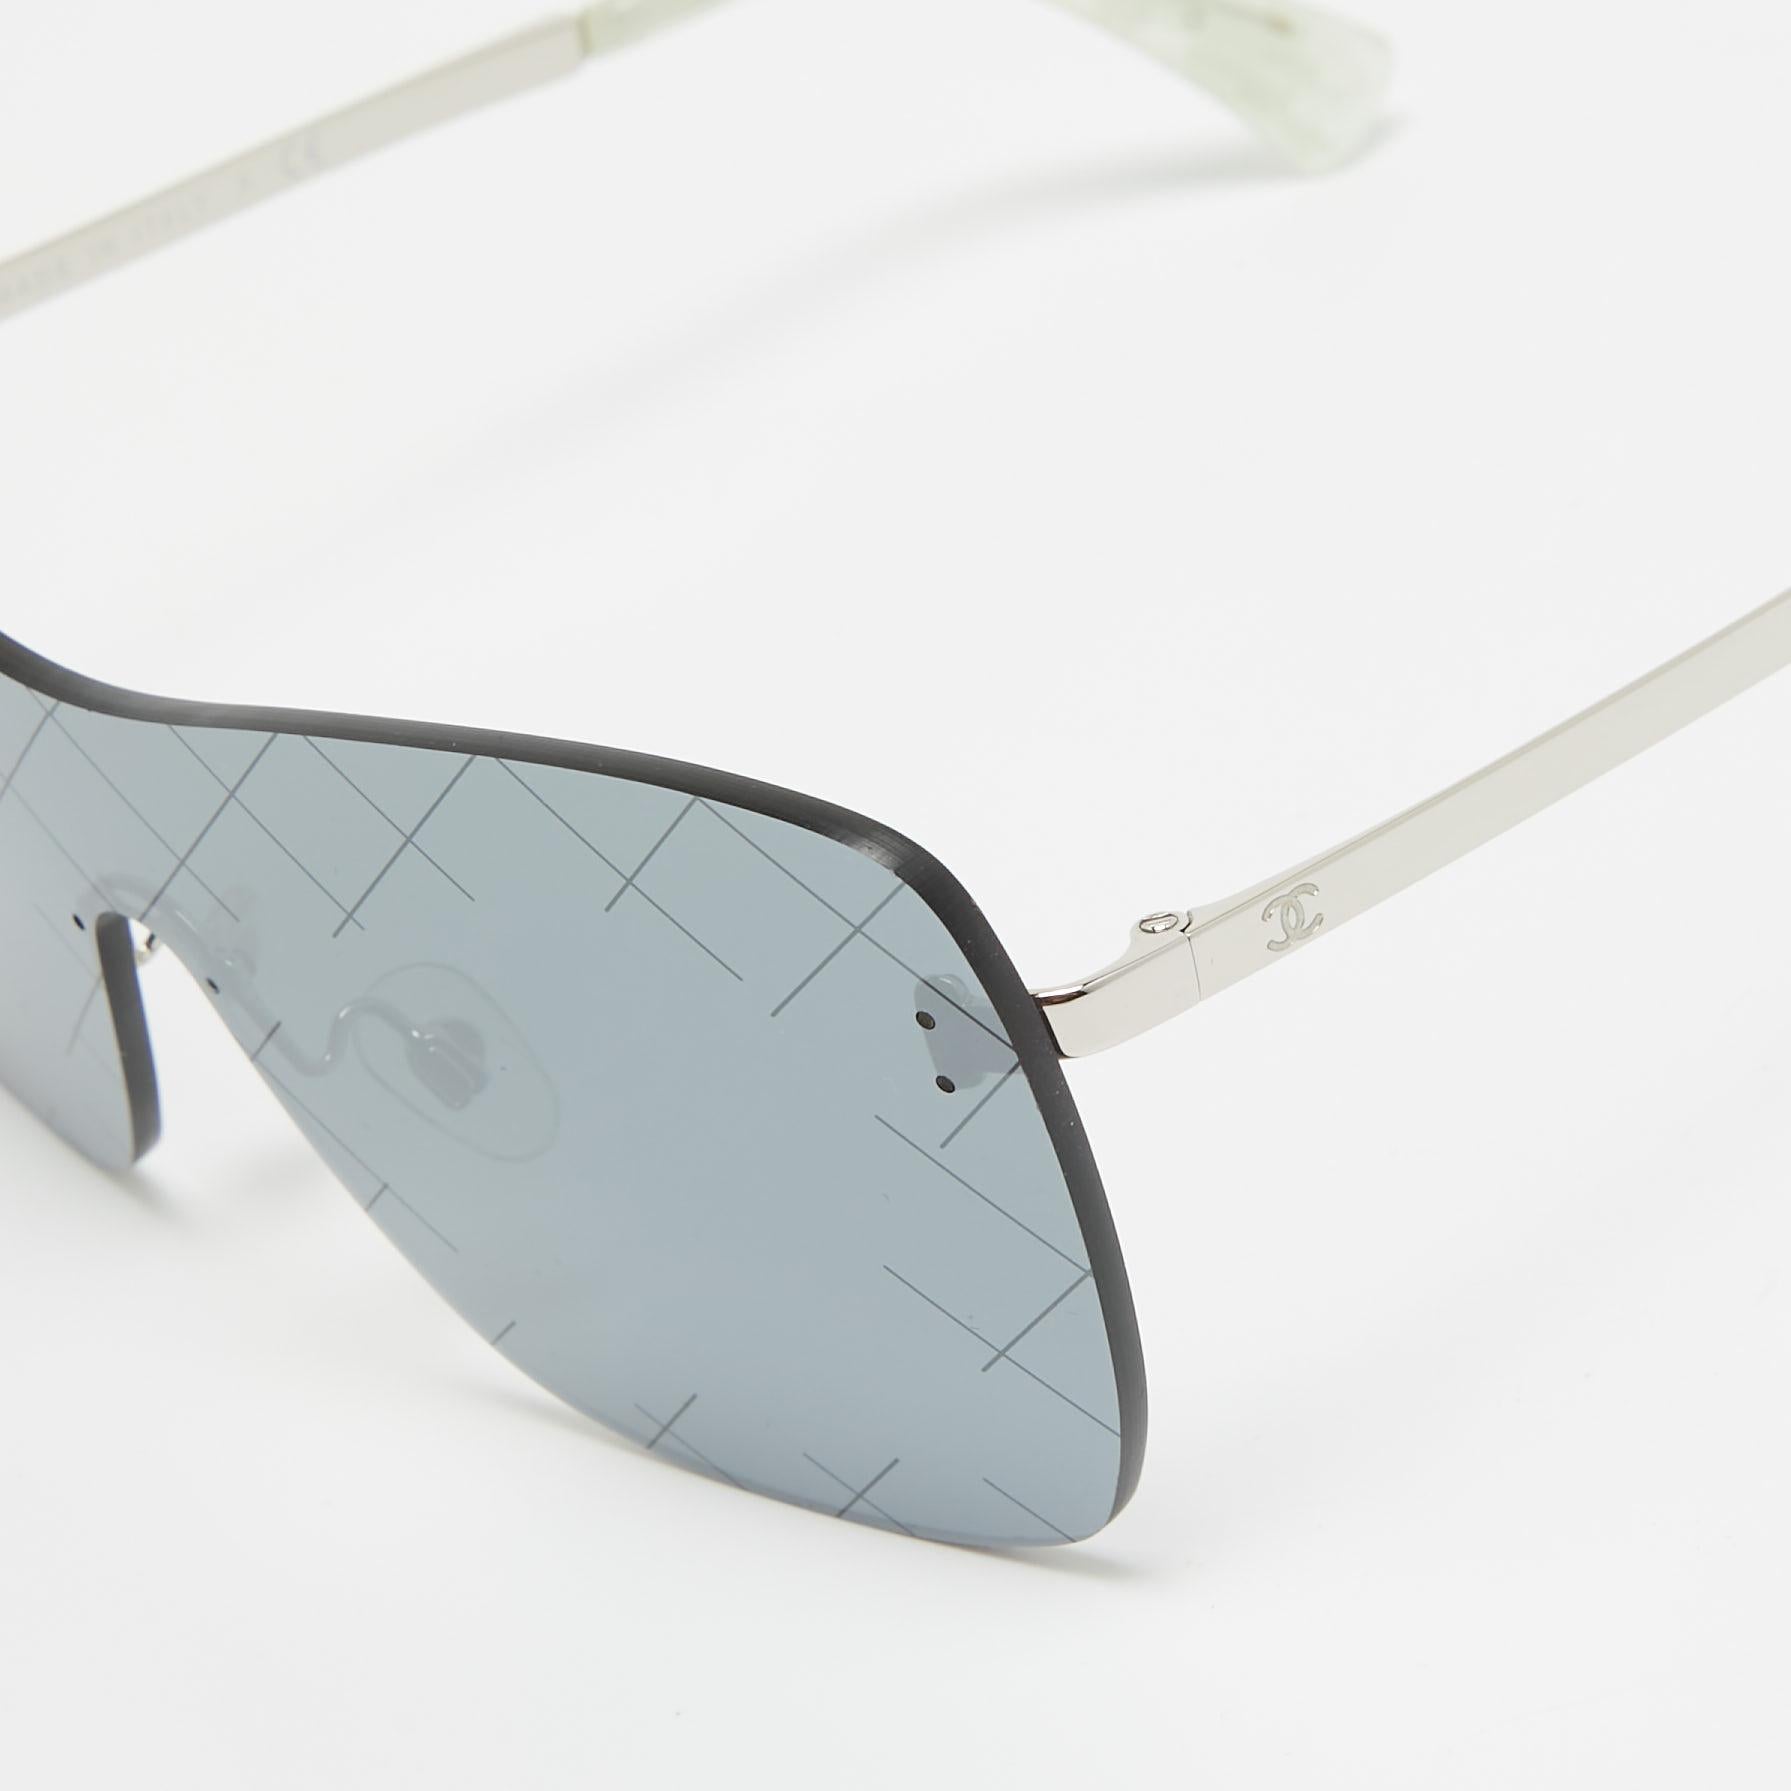 Nous voyons les détails sur cette exquise paire de lunettes de soleil de créateur fabriquée à partir de matériaux nobles. Les lunettes de soleil sont à la fois luxueuses et pratiques.

Comprend : Étui original

